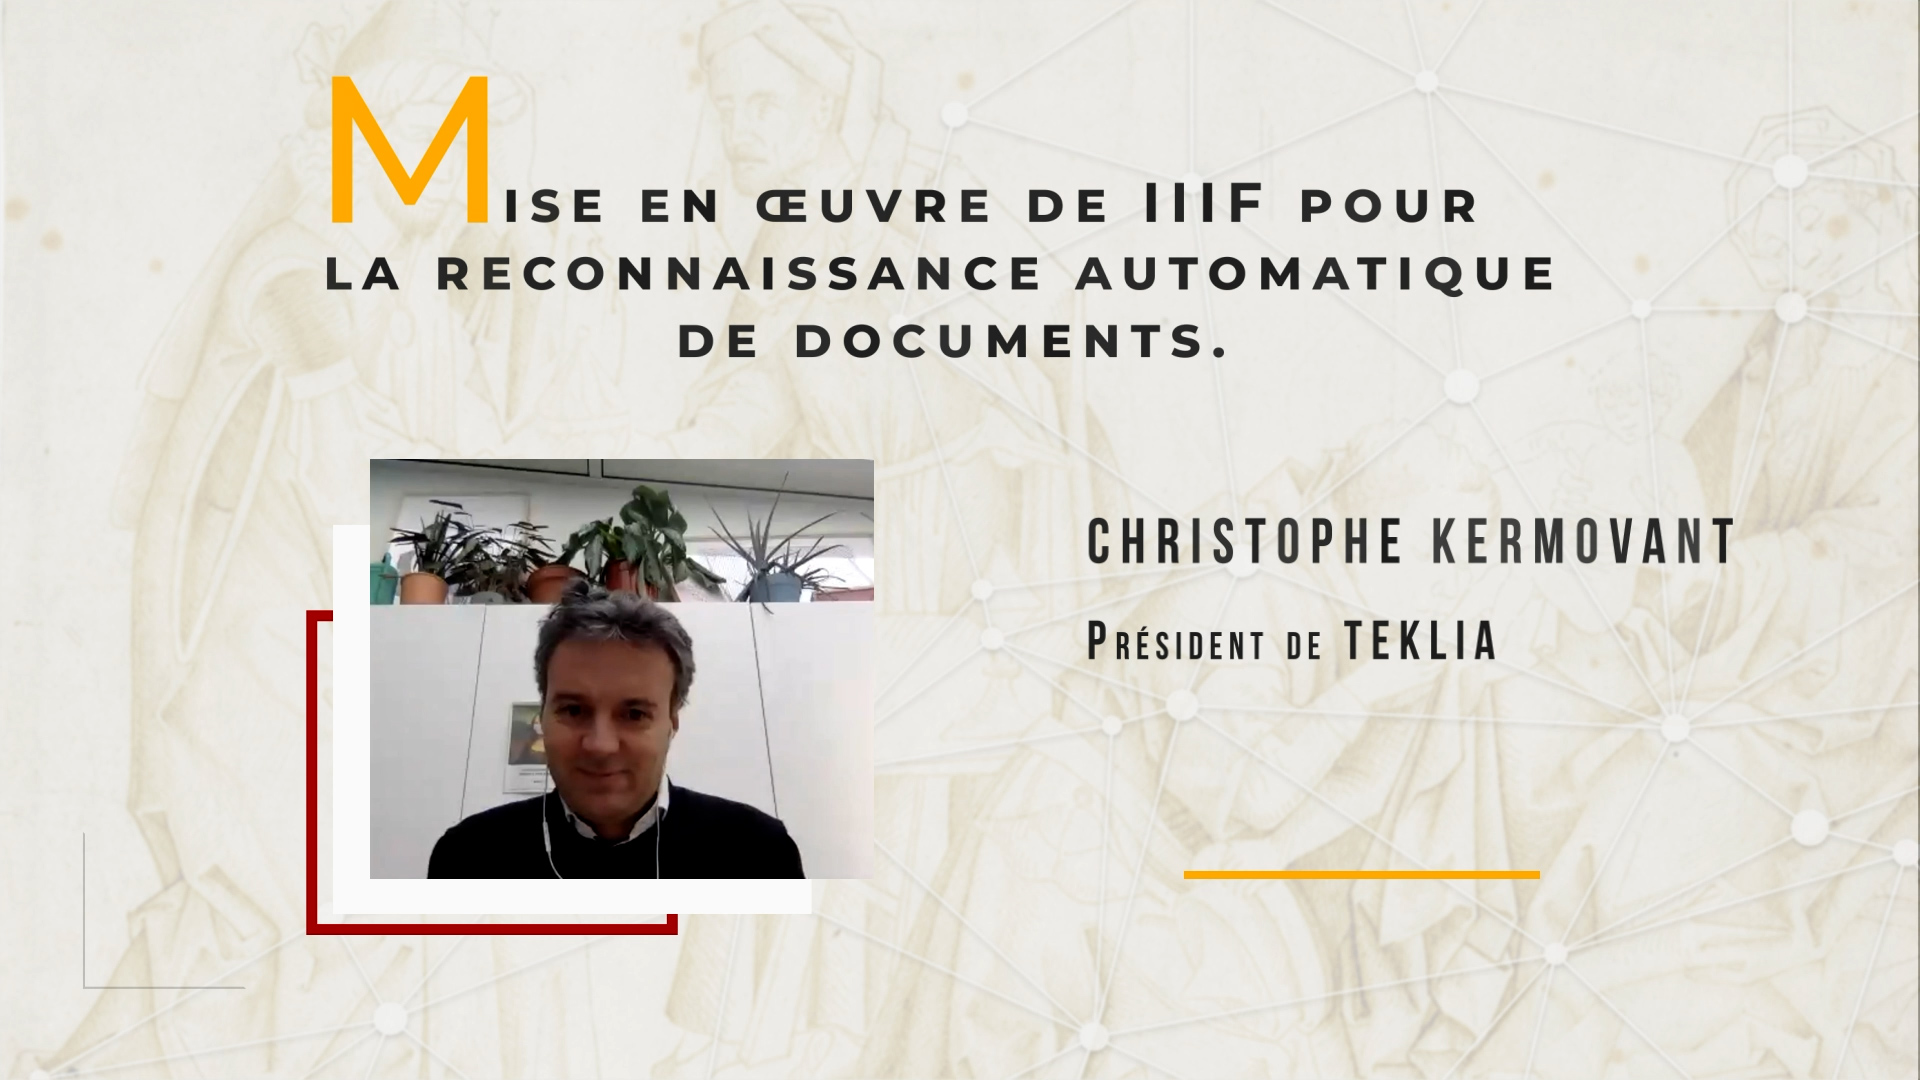 Rendez-vous IIIF 360 - Christopher Kermorvant "Mise en œuvre de IIIF pour la reconnaissance automatique des documents"